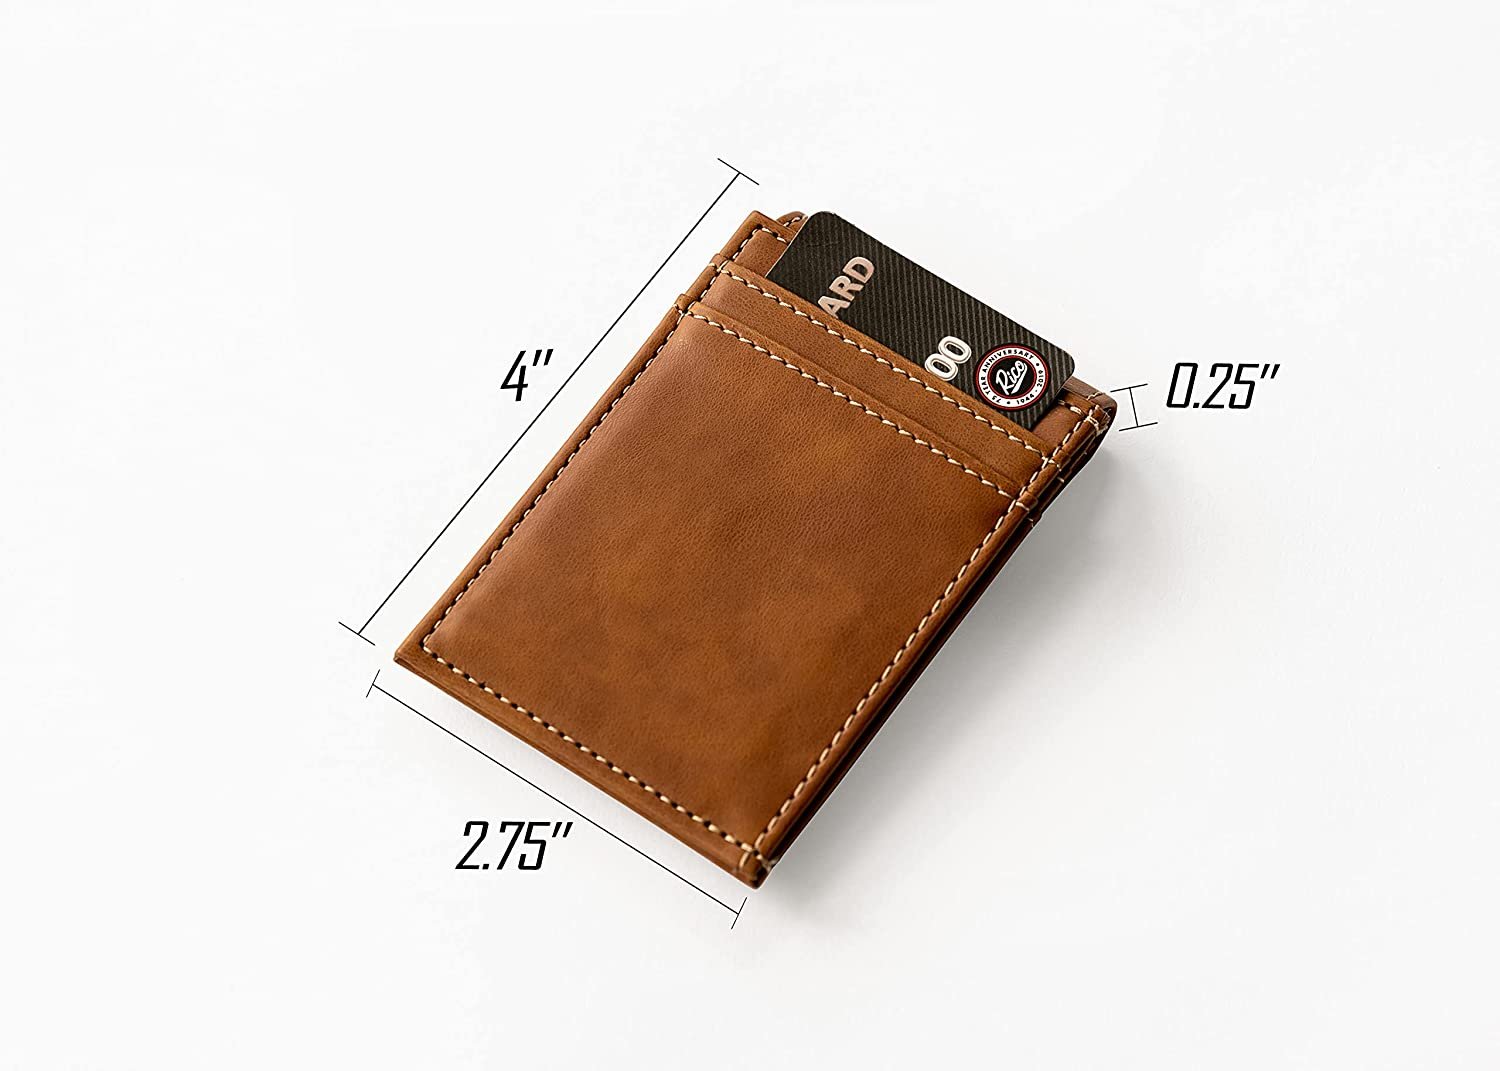 San Francisco 49ers Premium Brown Leather Wallet, Front Pocket Magnetic Money Clip, Laser Engraved, Vegan